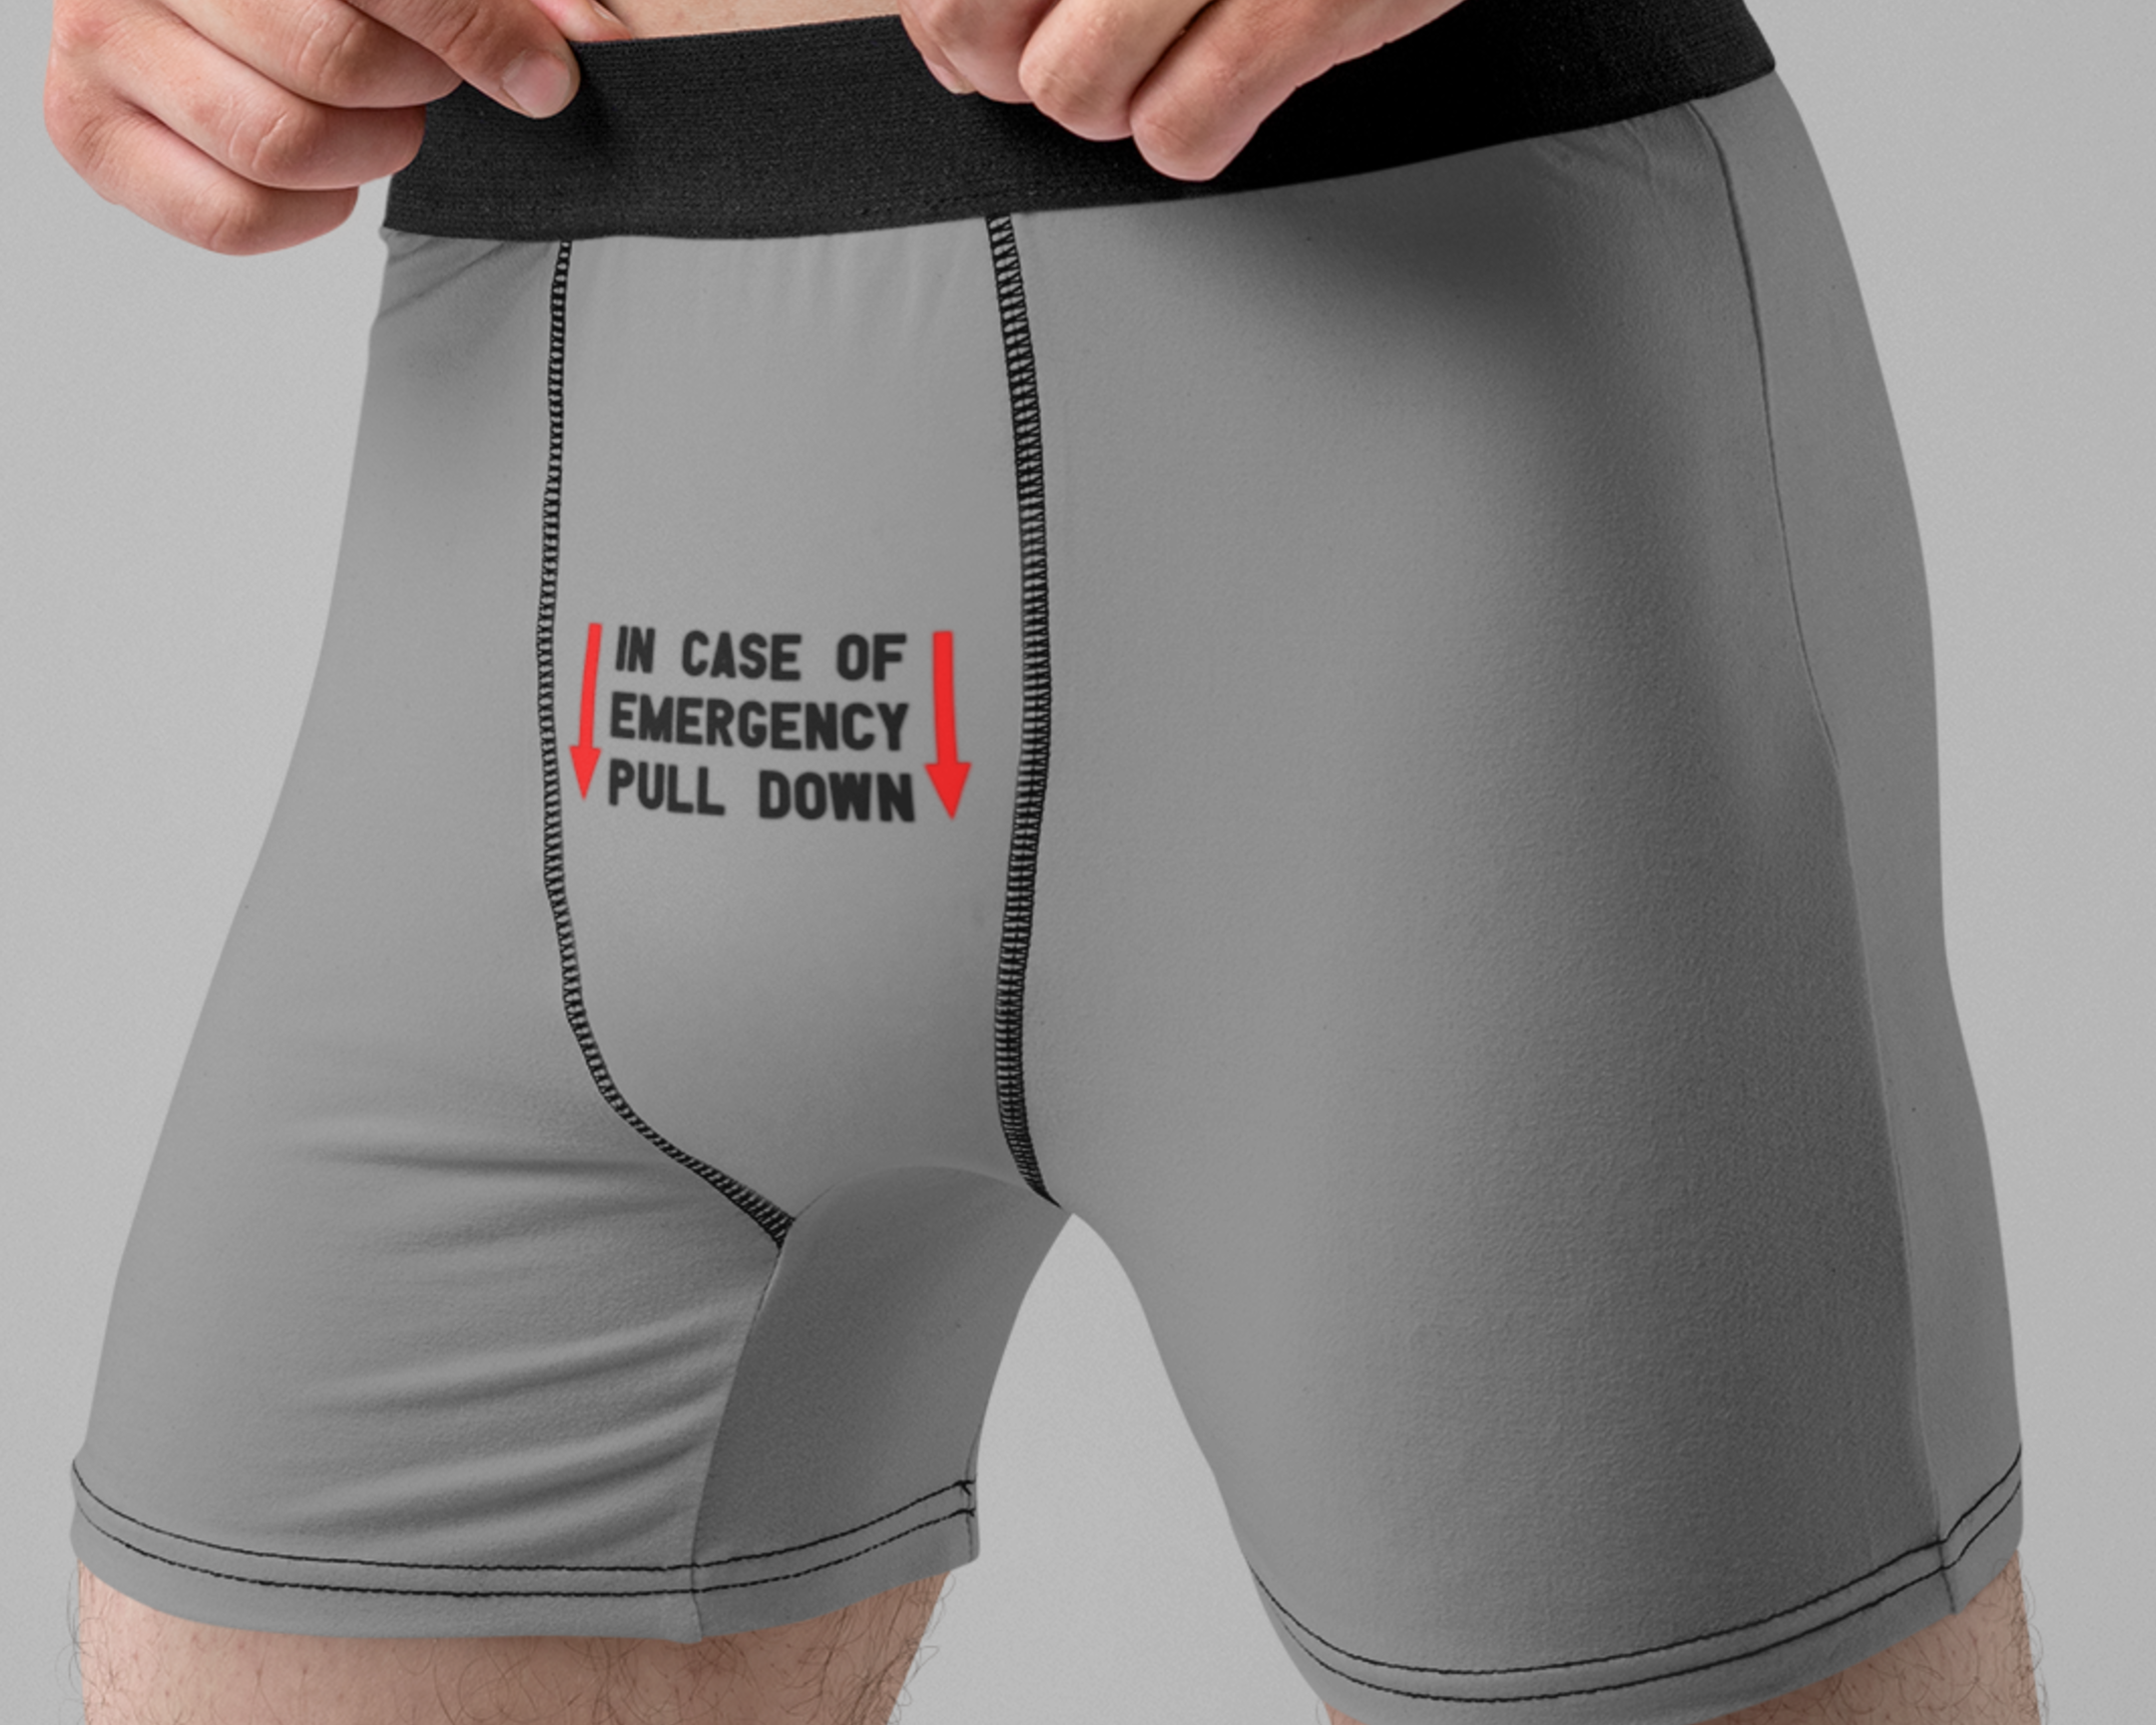 NSFW SVG - In Case of Emergency Pull Down SVG - Men's Underwear Svg